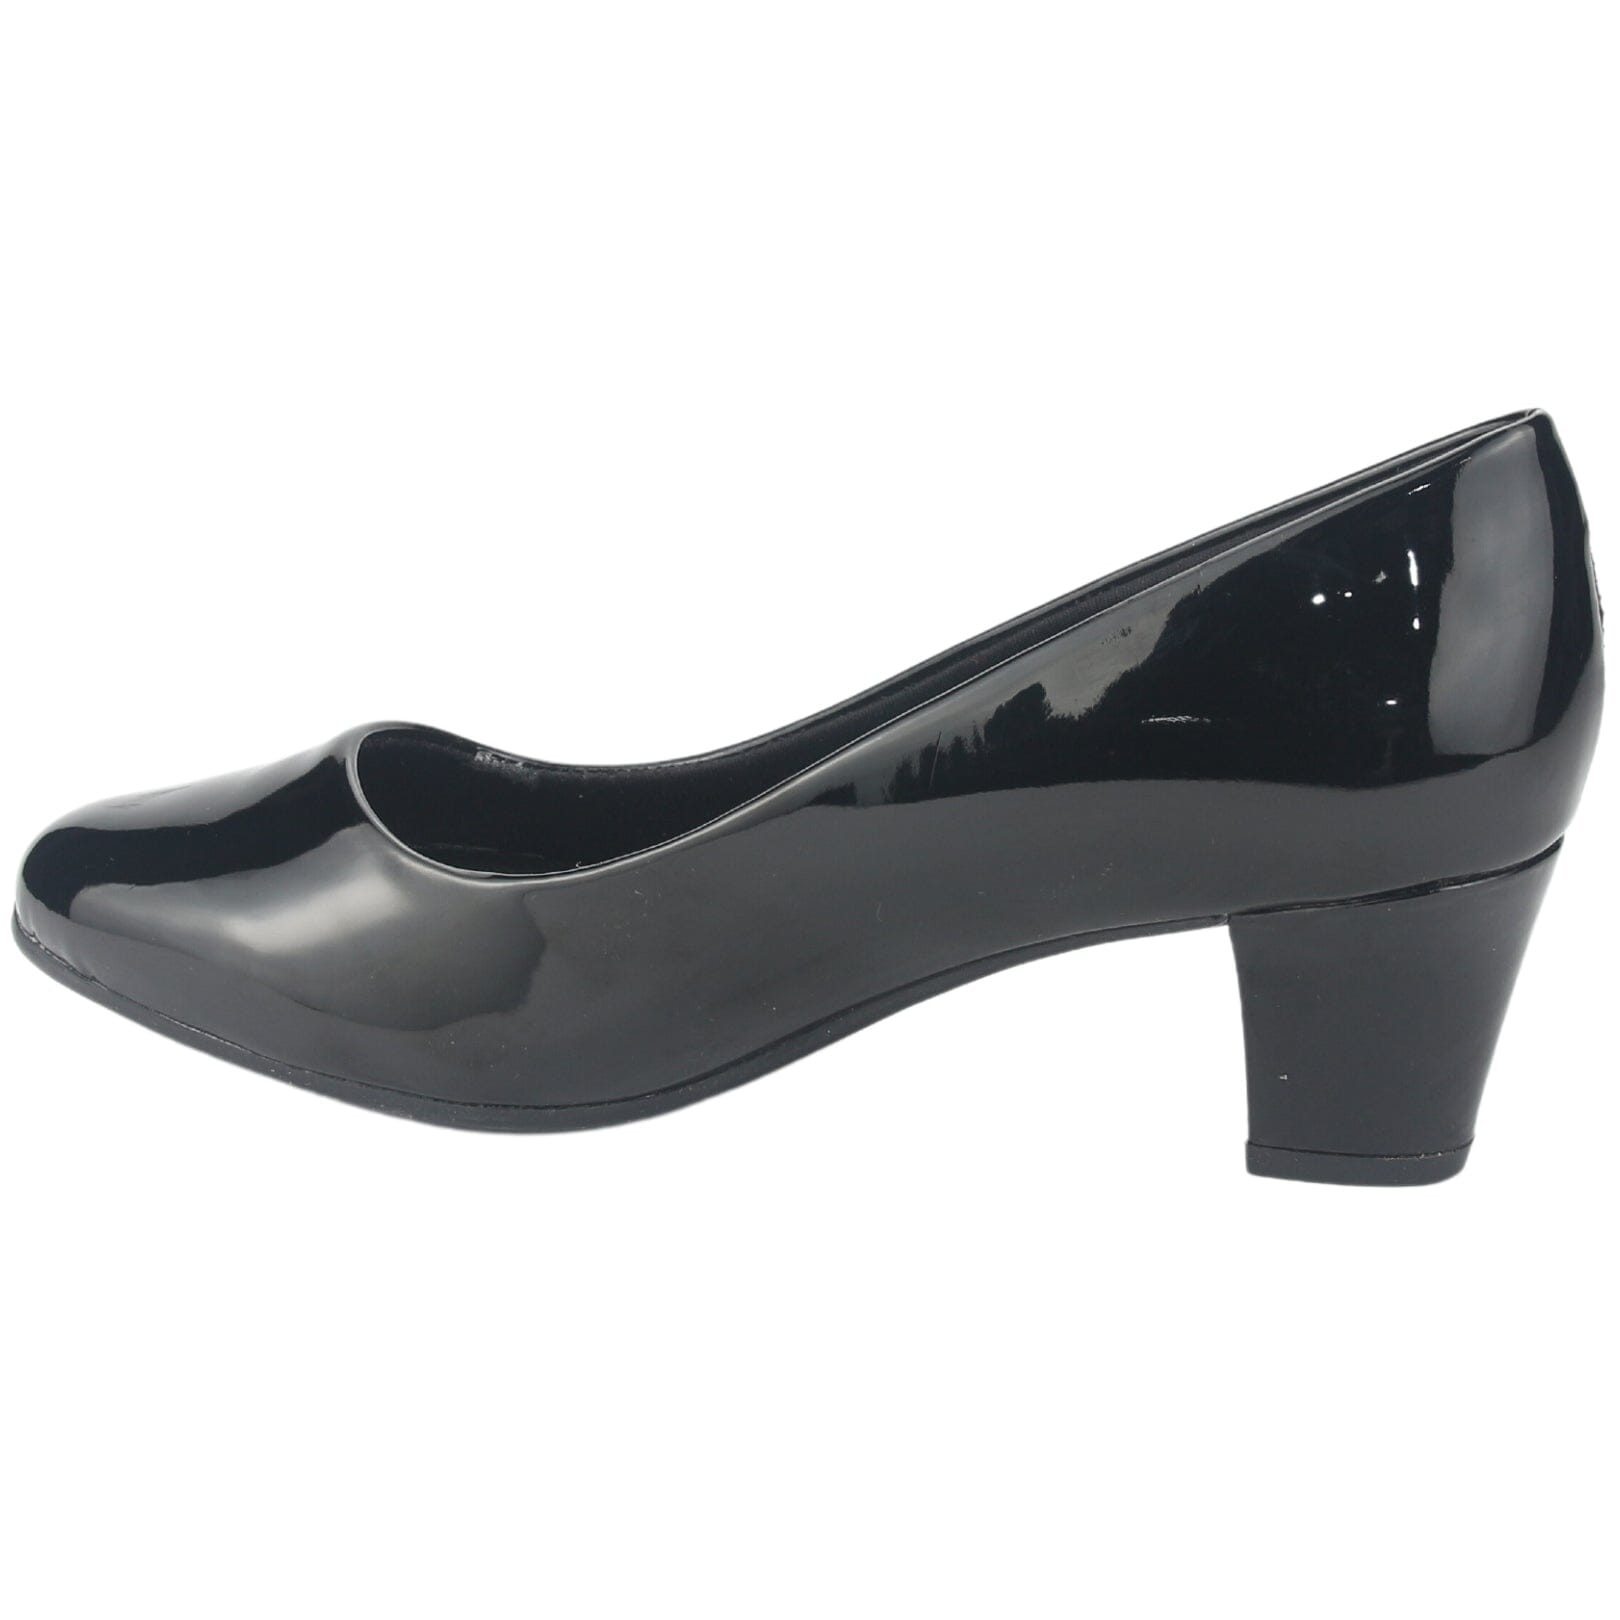 Zapato Comfortflex Mujer 2397401 V Negro Casual Tacones Altos Comfortflex 